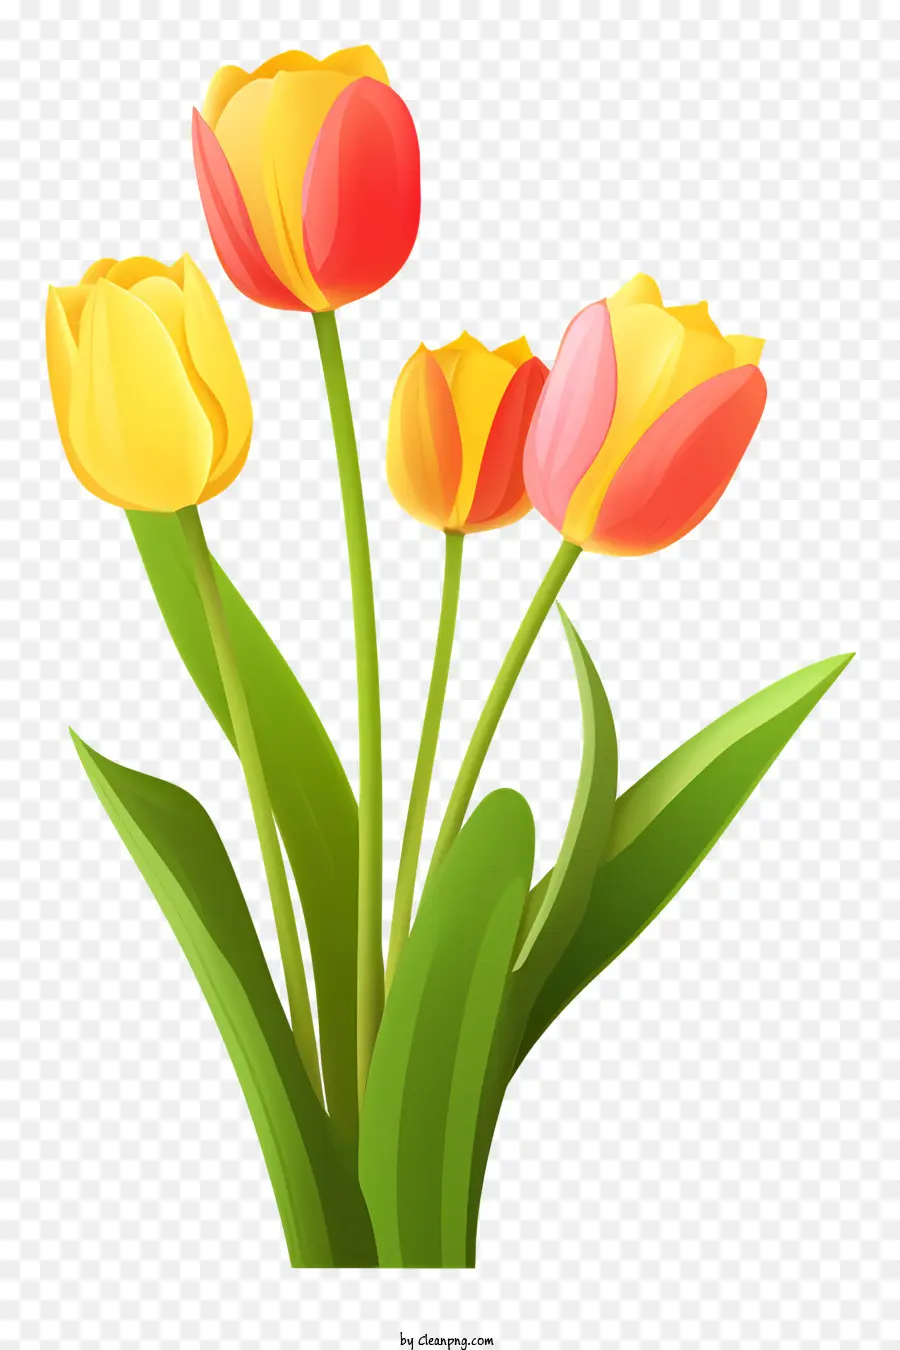 Bouquet Tulips Vaso rosso giallo - Bouquet tulipano con giallo, rosso e verde